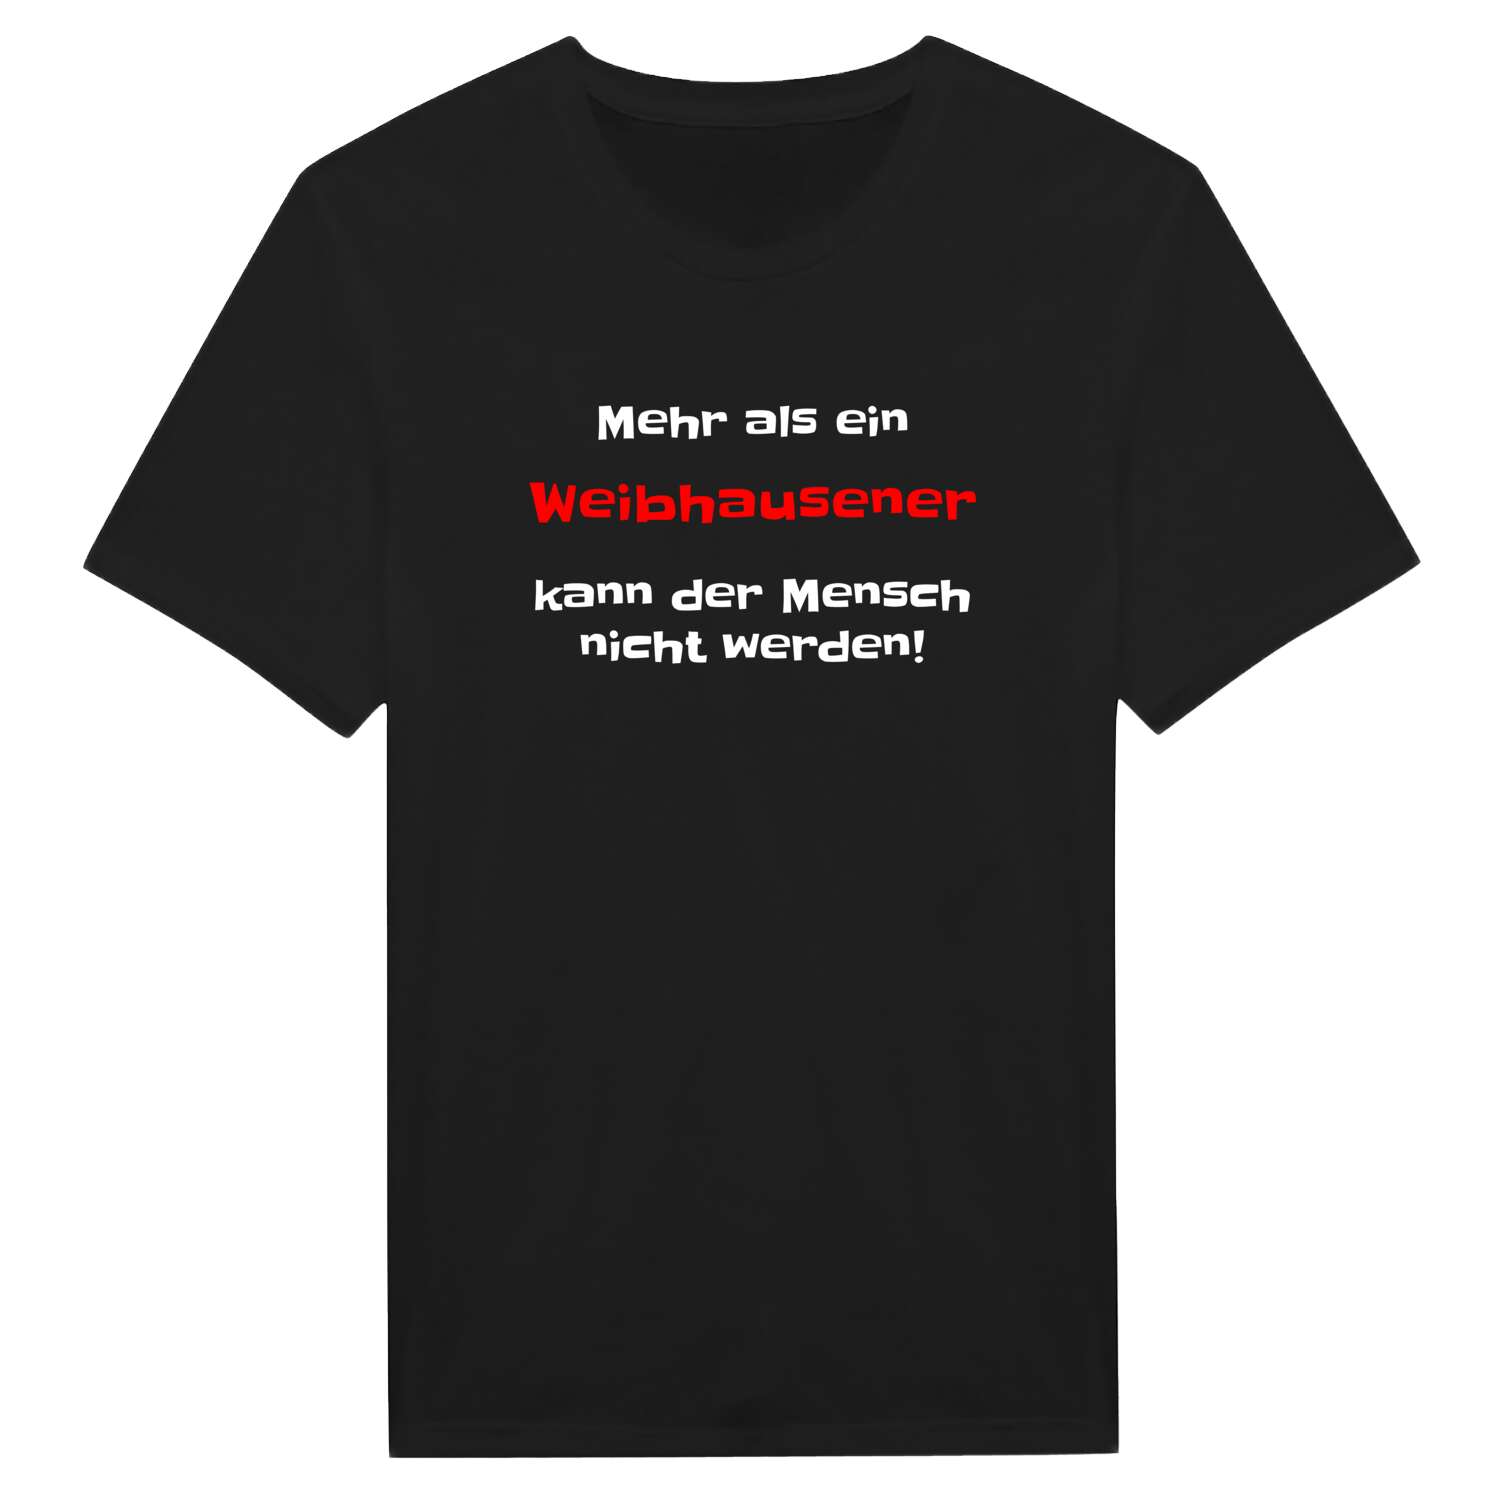 Weibhausen T-Shirt »Mehr als ein«